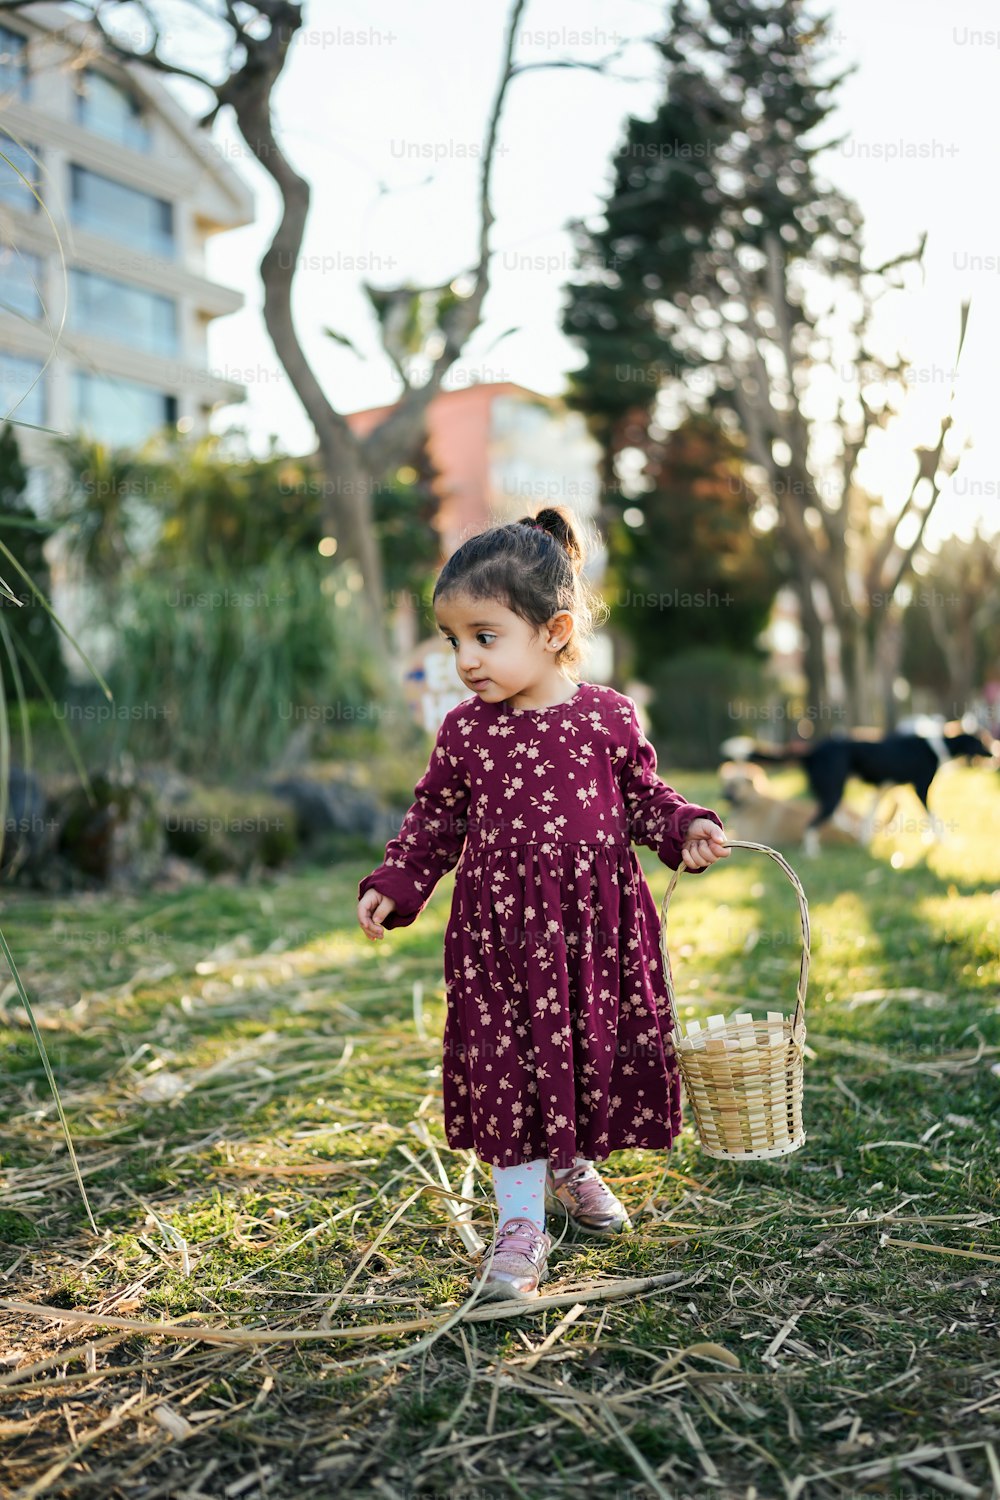 풀밭에 바구니를 들고 있는 어린 소녀